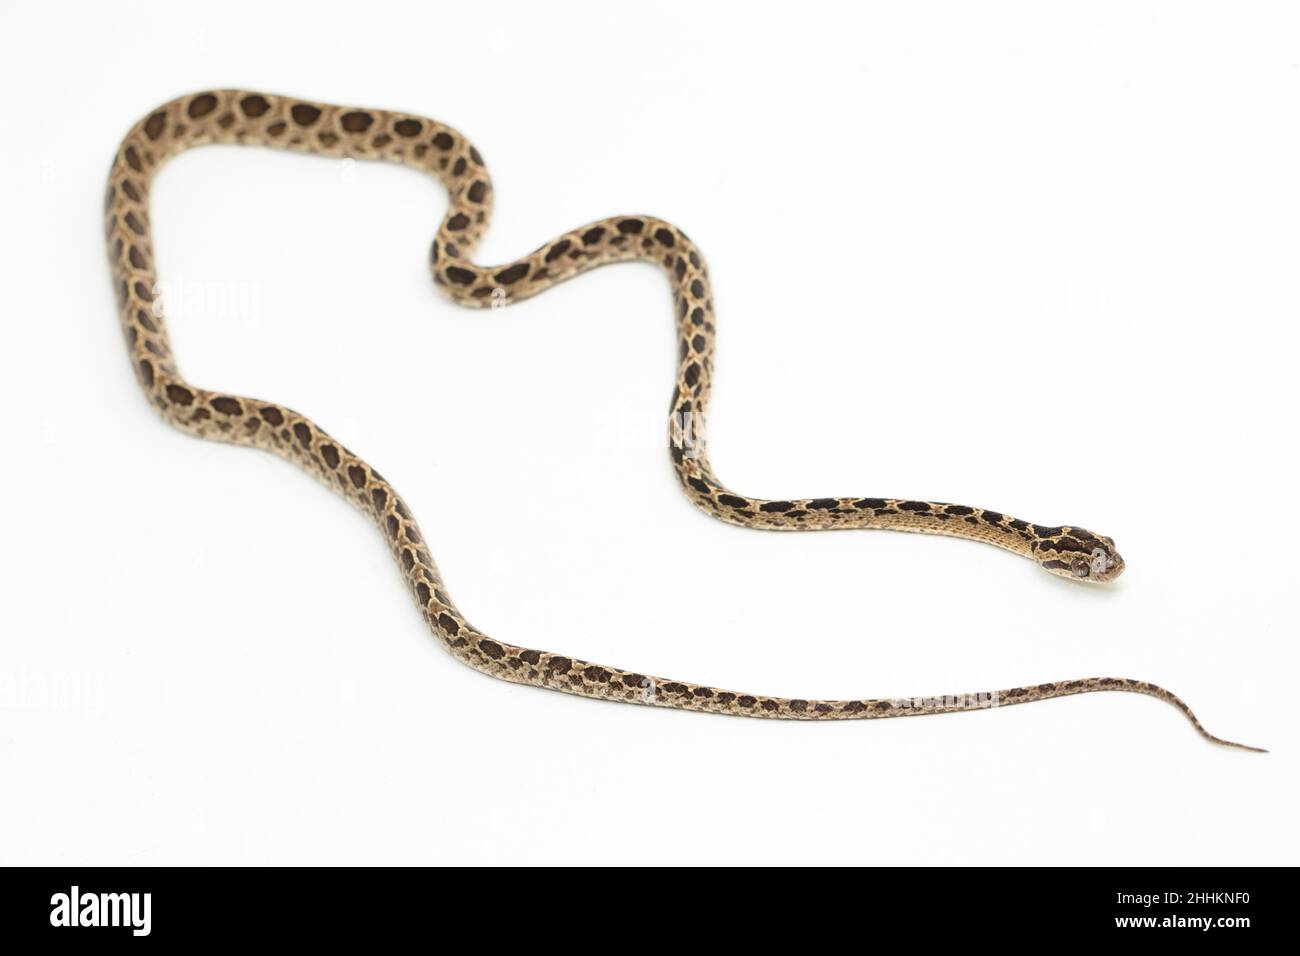 The many-spotted cat snake Boiga multomaculata isolated on white background Stock Photo